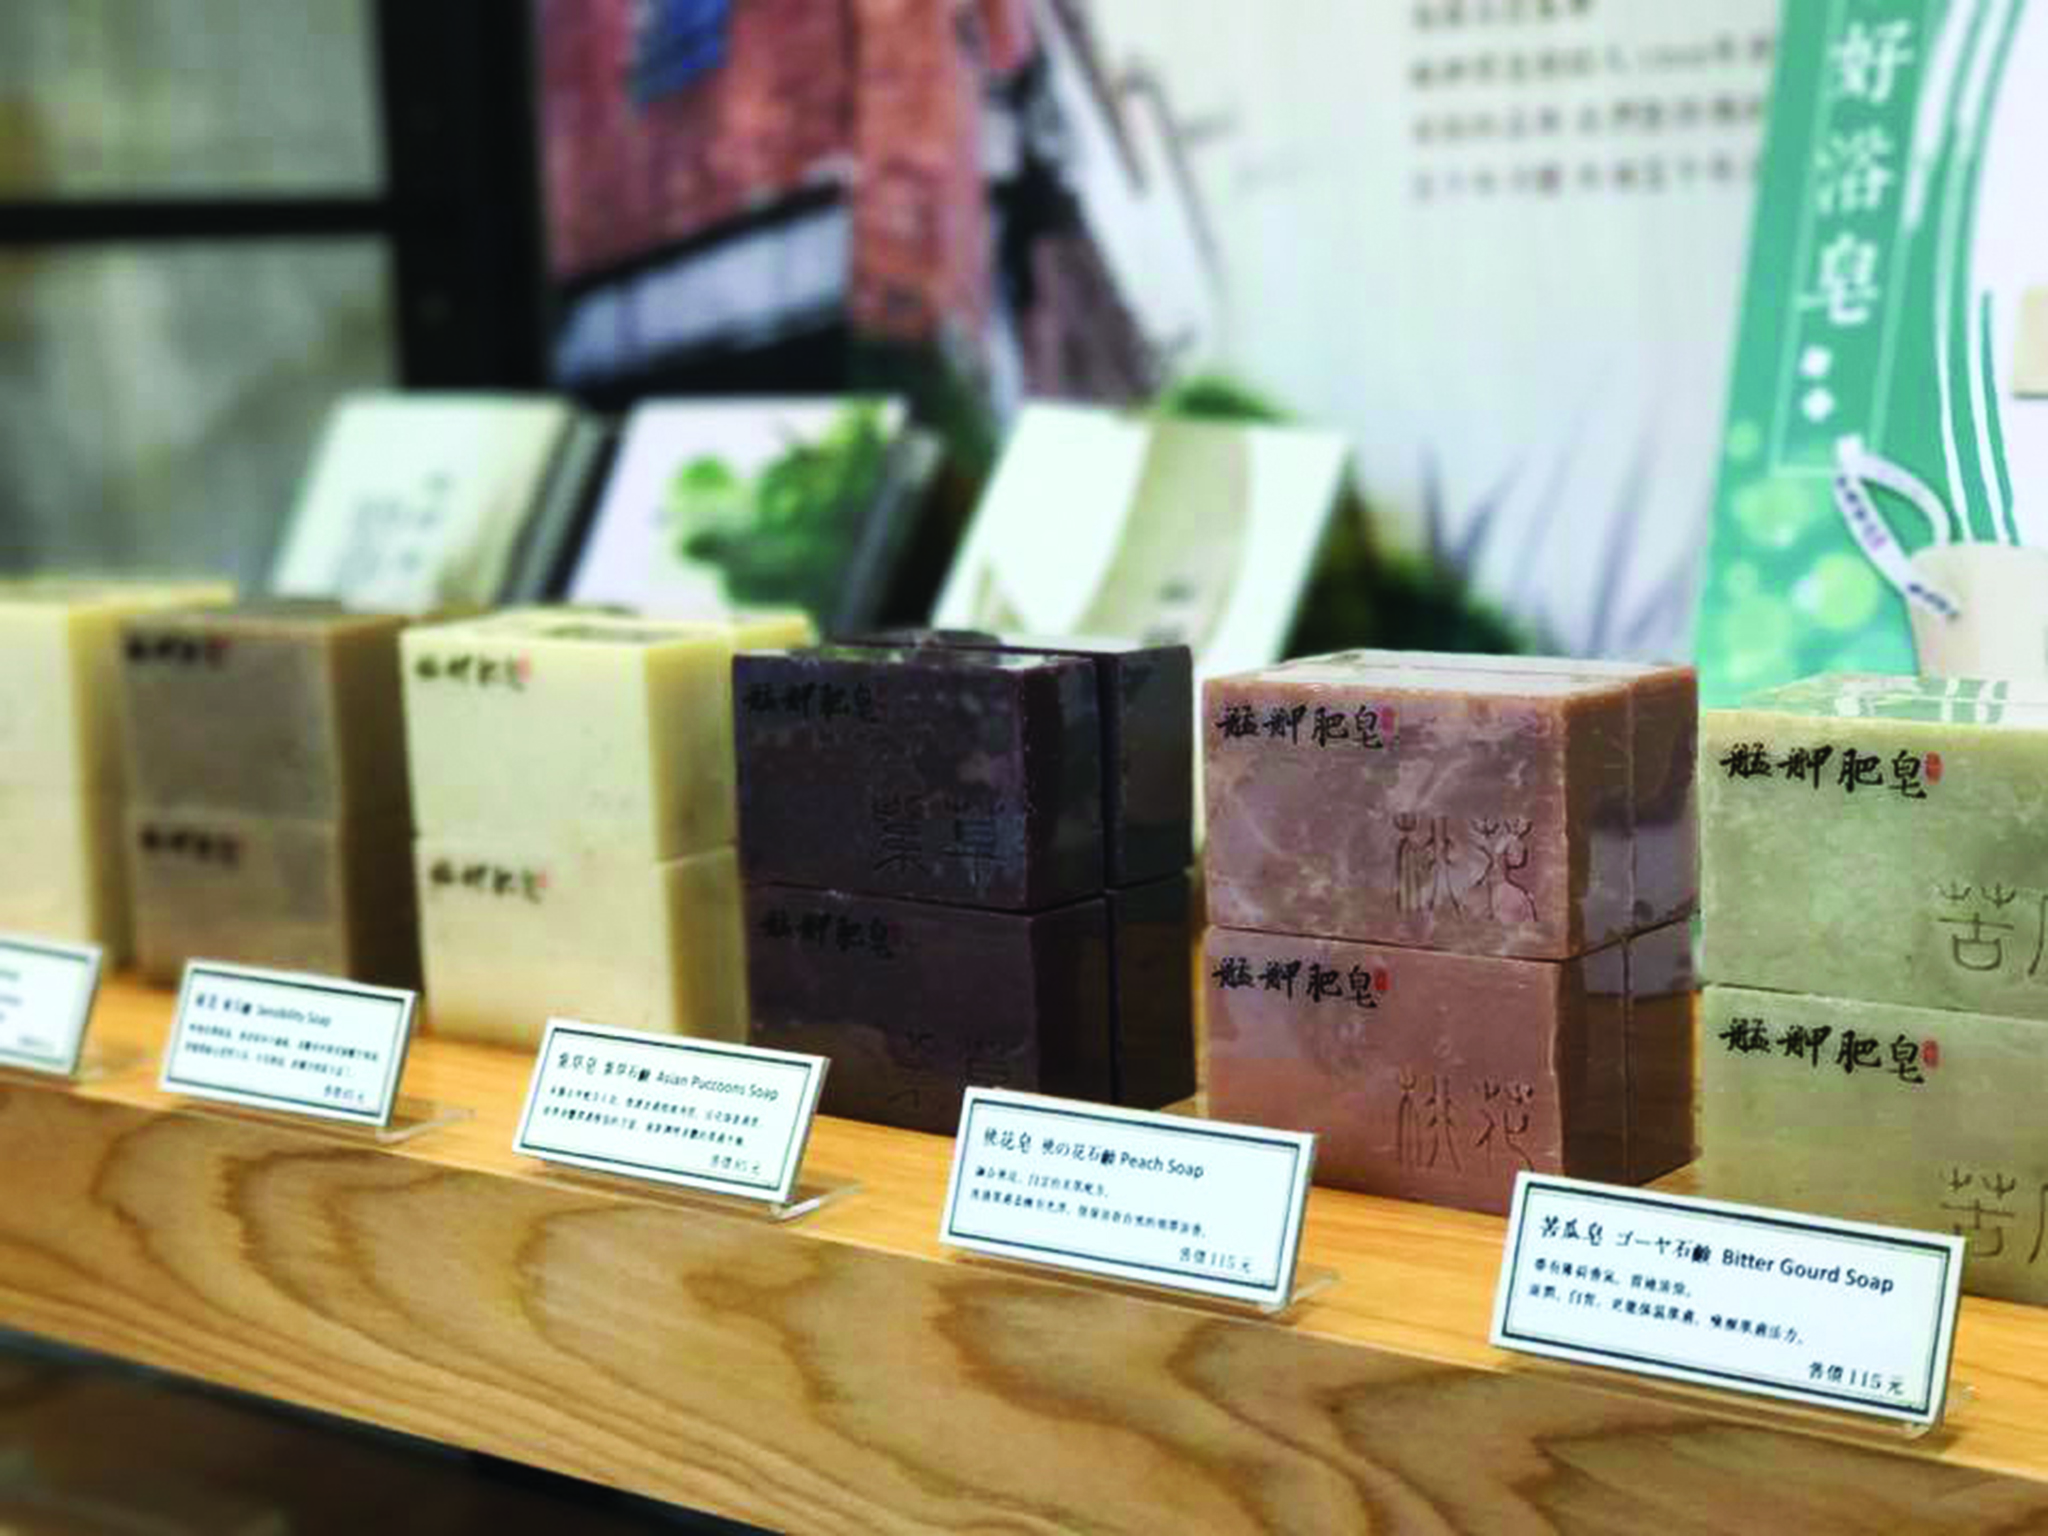 “Enxins”, loja de produtos de beleza naturais | Cheiros de Taiwan